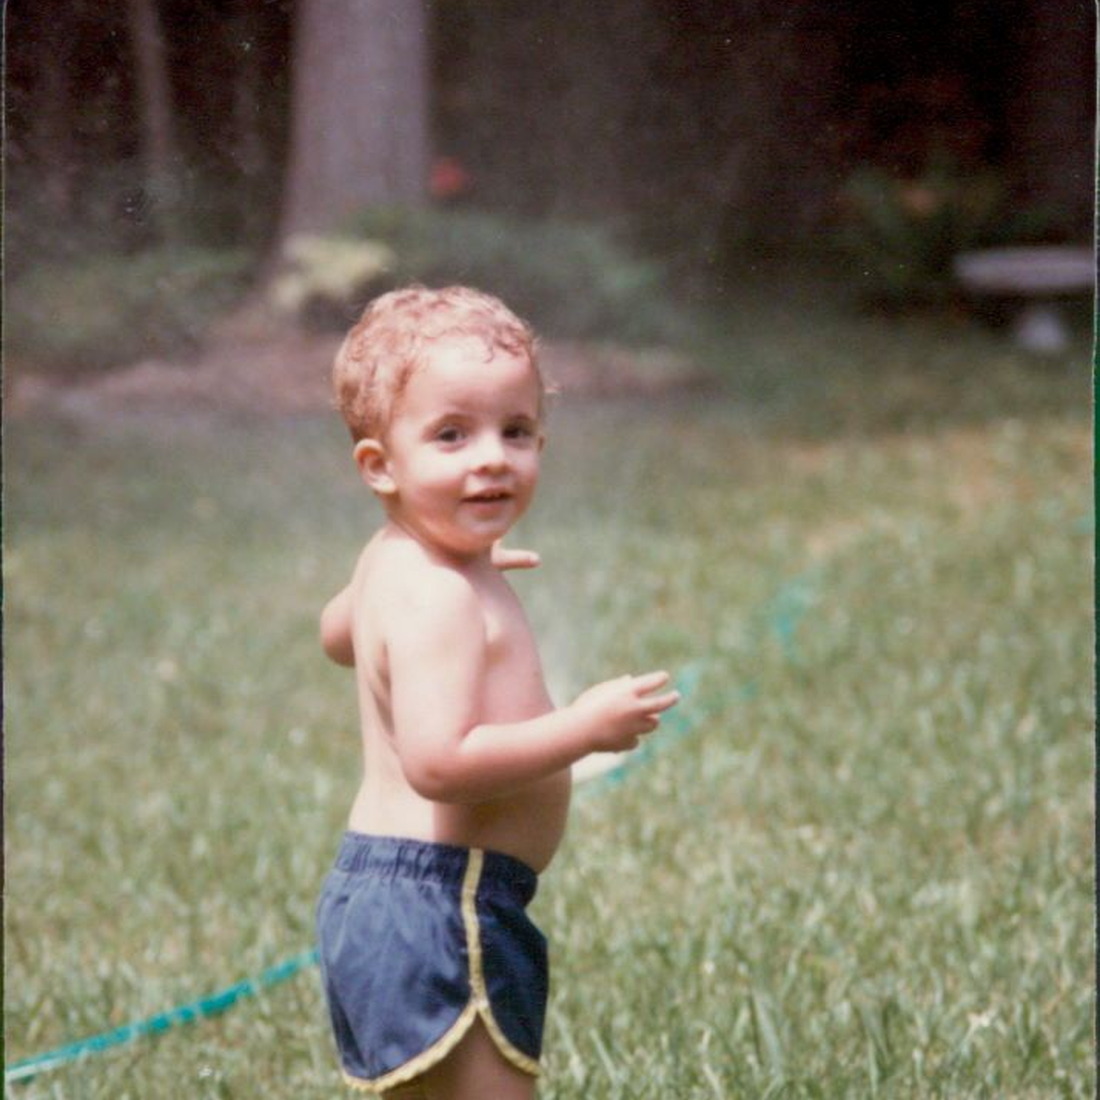 A young boy outside, holding a garden hose